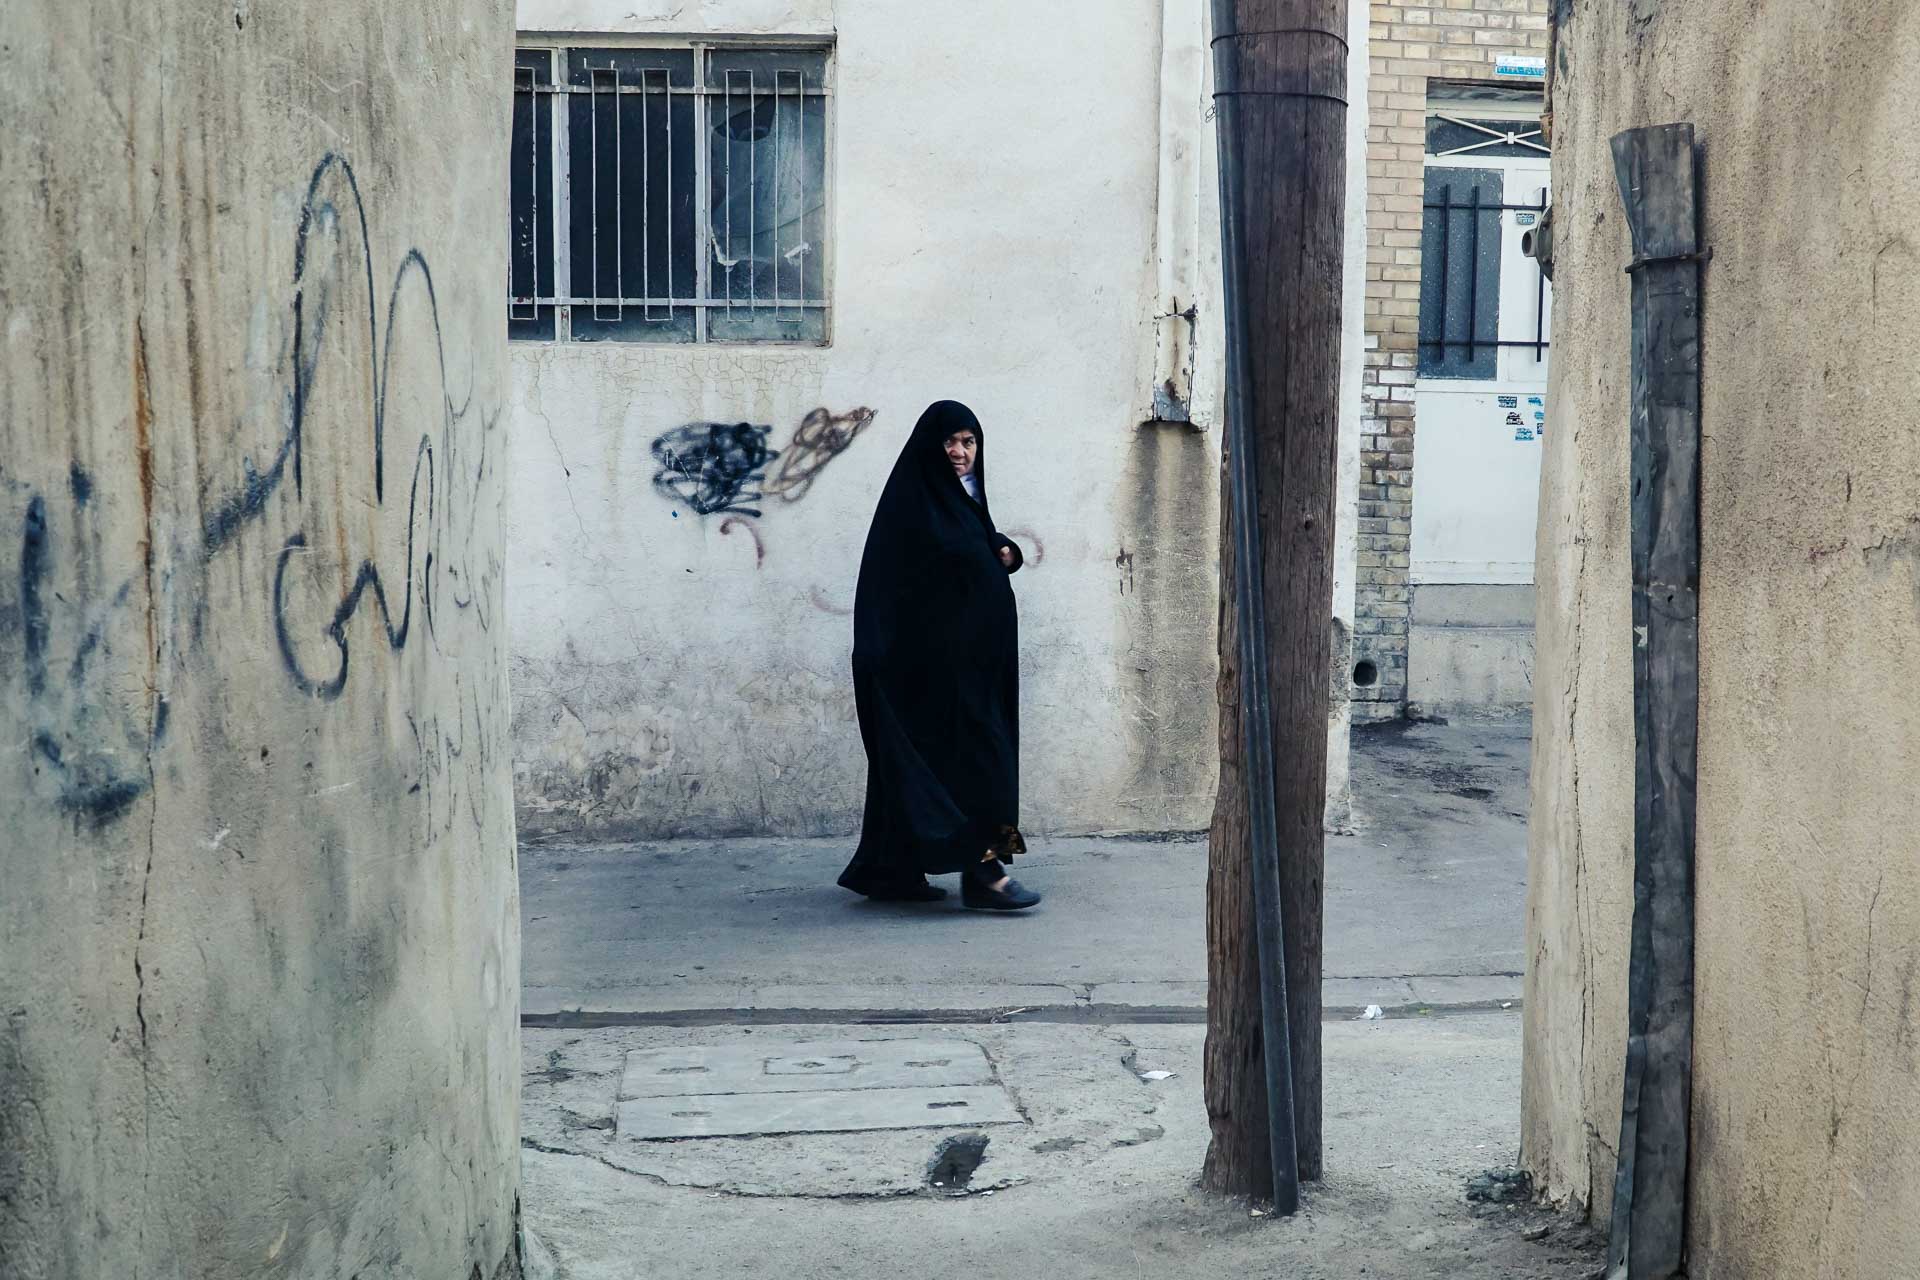 Mulher passando nas ruas do Irã com vestimenta tradicional